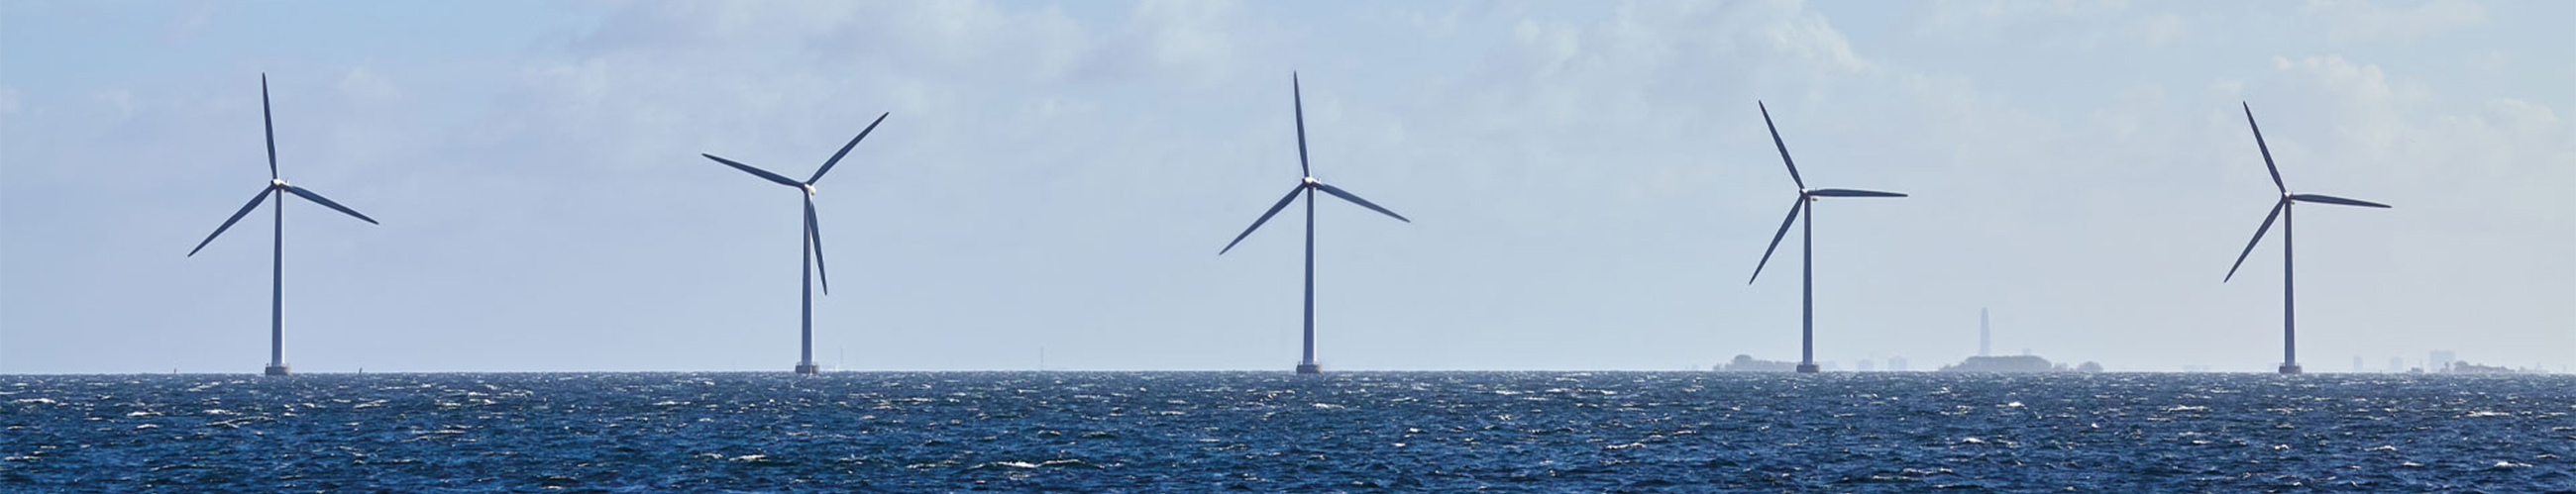 Bild von fünf Offshore Windrädern auf dem Meer